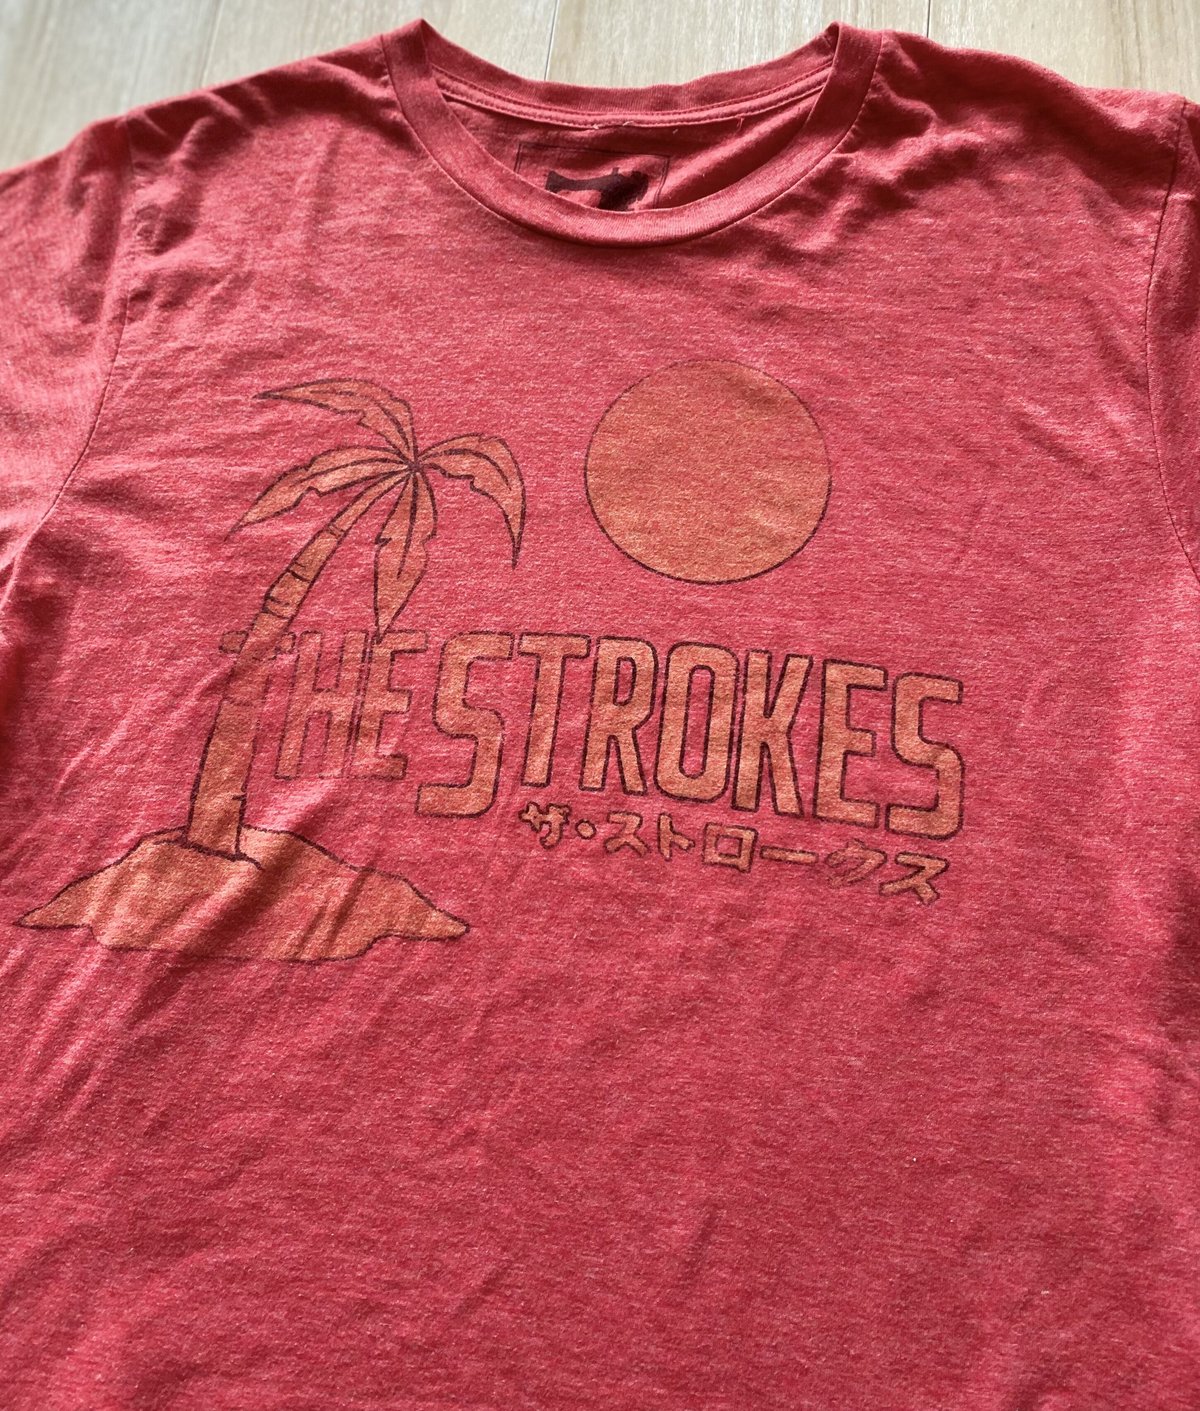 【古着】THE STROKES T-Shirt